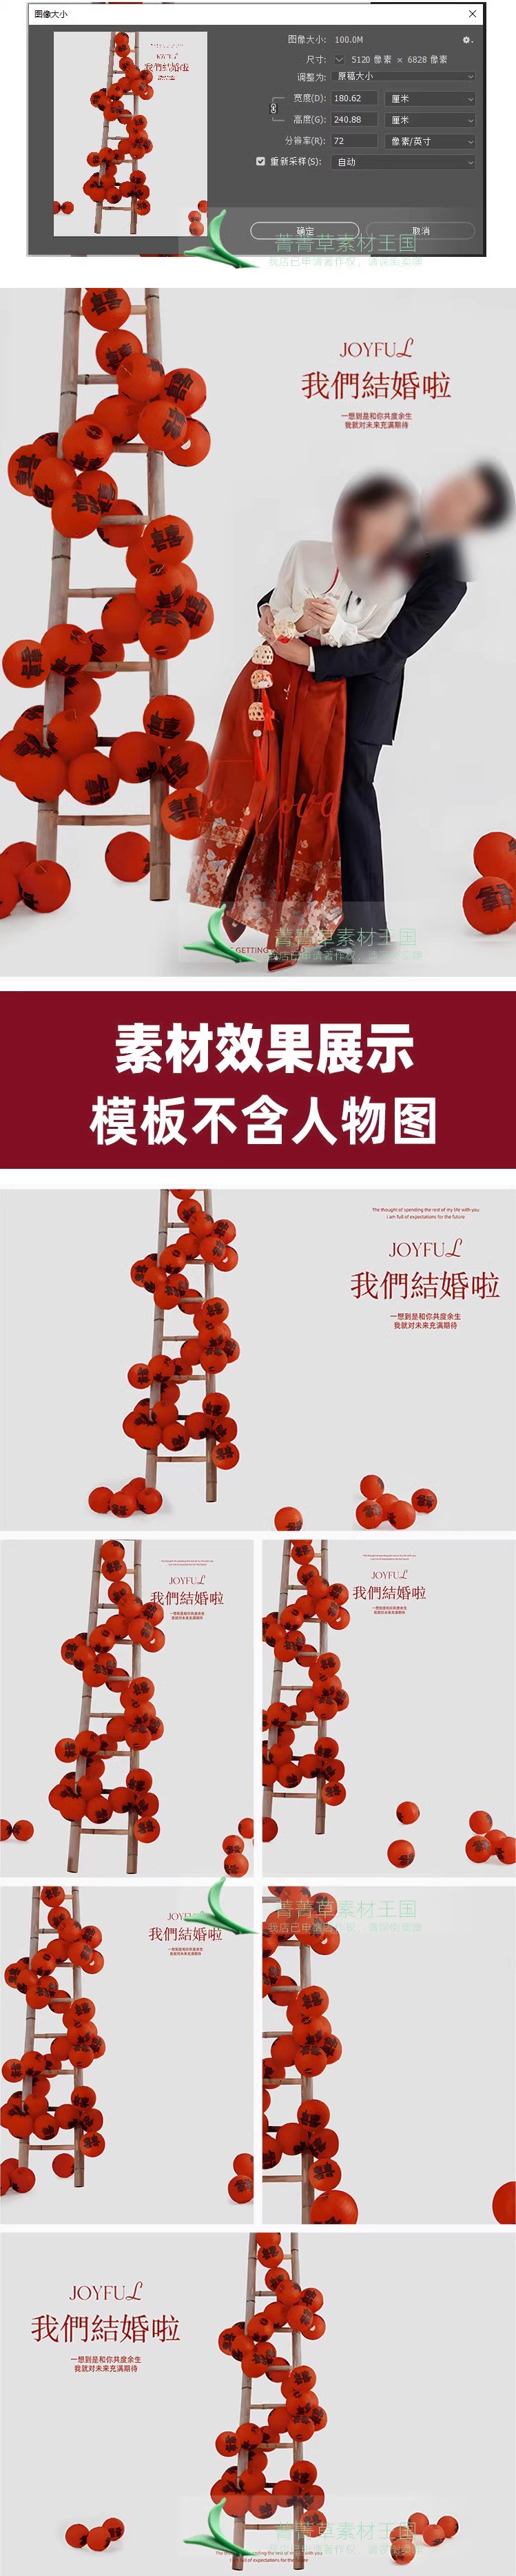 Psd-3018, Bộ 6 Psd Tài Liệu Nền Ghép ảnh Cưới Màu đỏ Phong Cách Trung Quốc đèn Lồng Hạnh Phúc 2